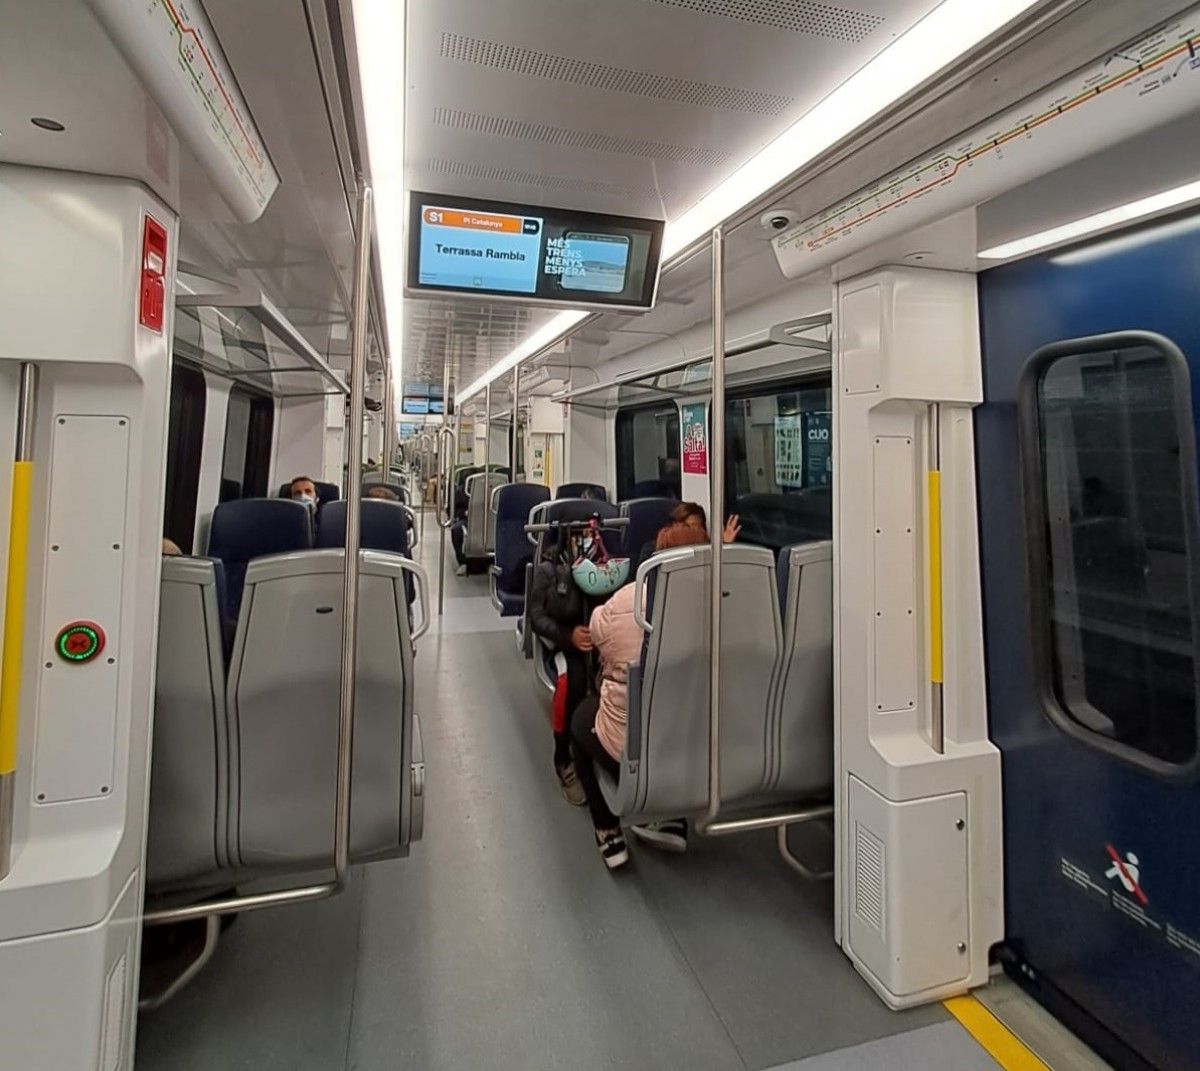 Una imatge presa per un usuari que ha agafat el tren aquest matí per anar a treballar a Barcelona